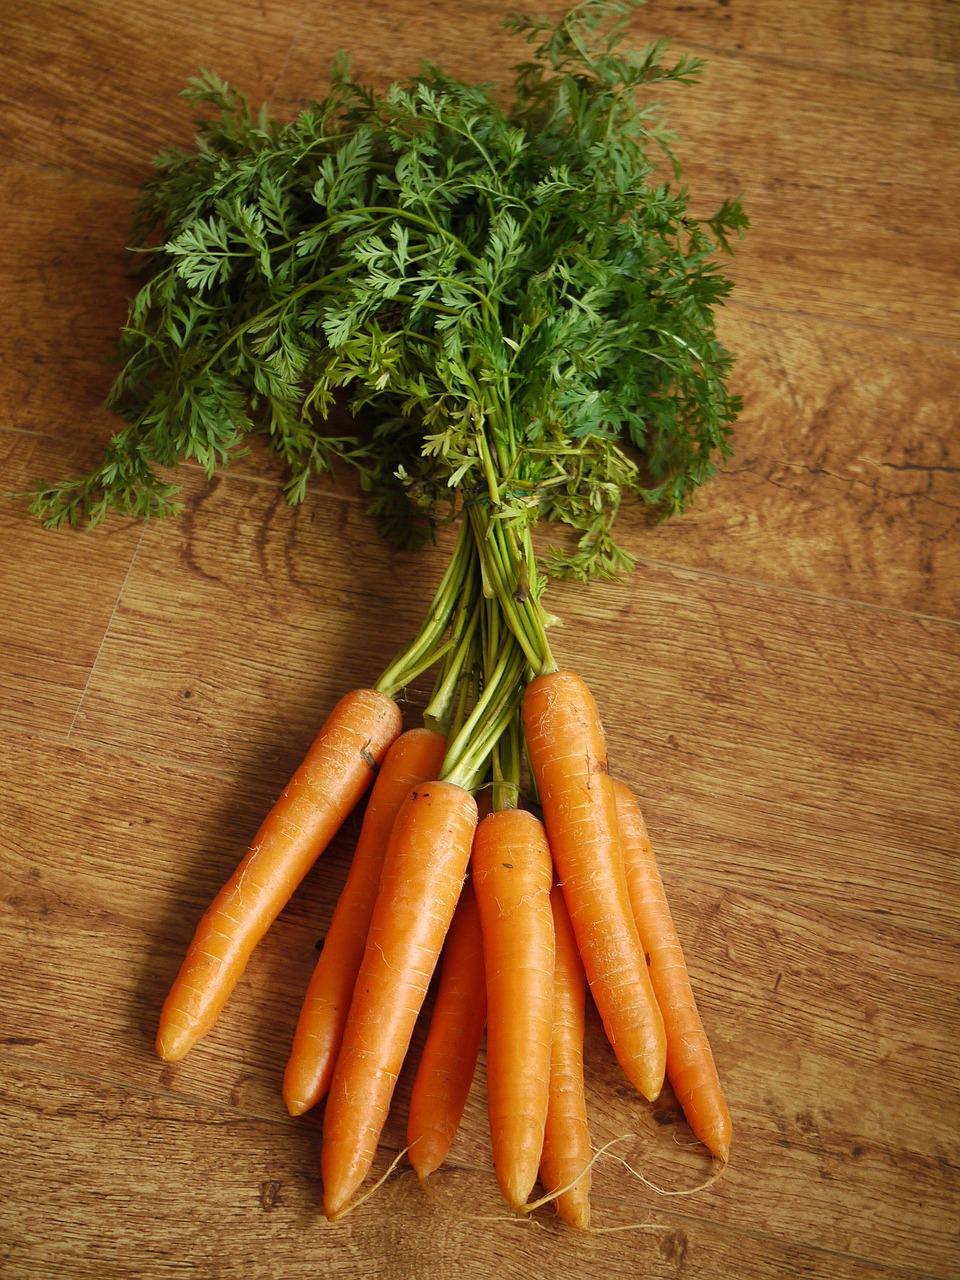 carrots, carrot tops, vegetable-1112020.jpg